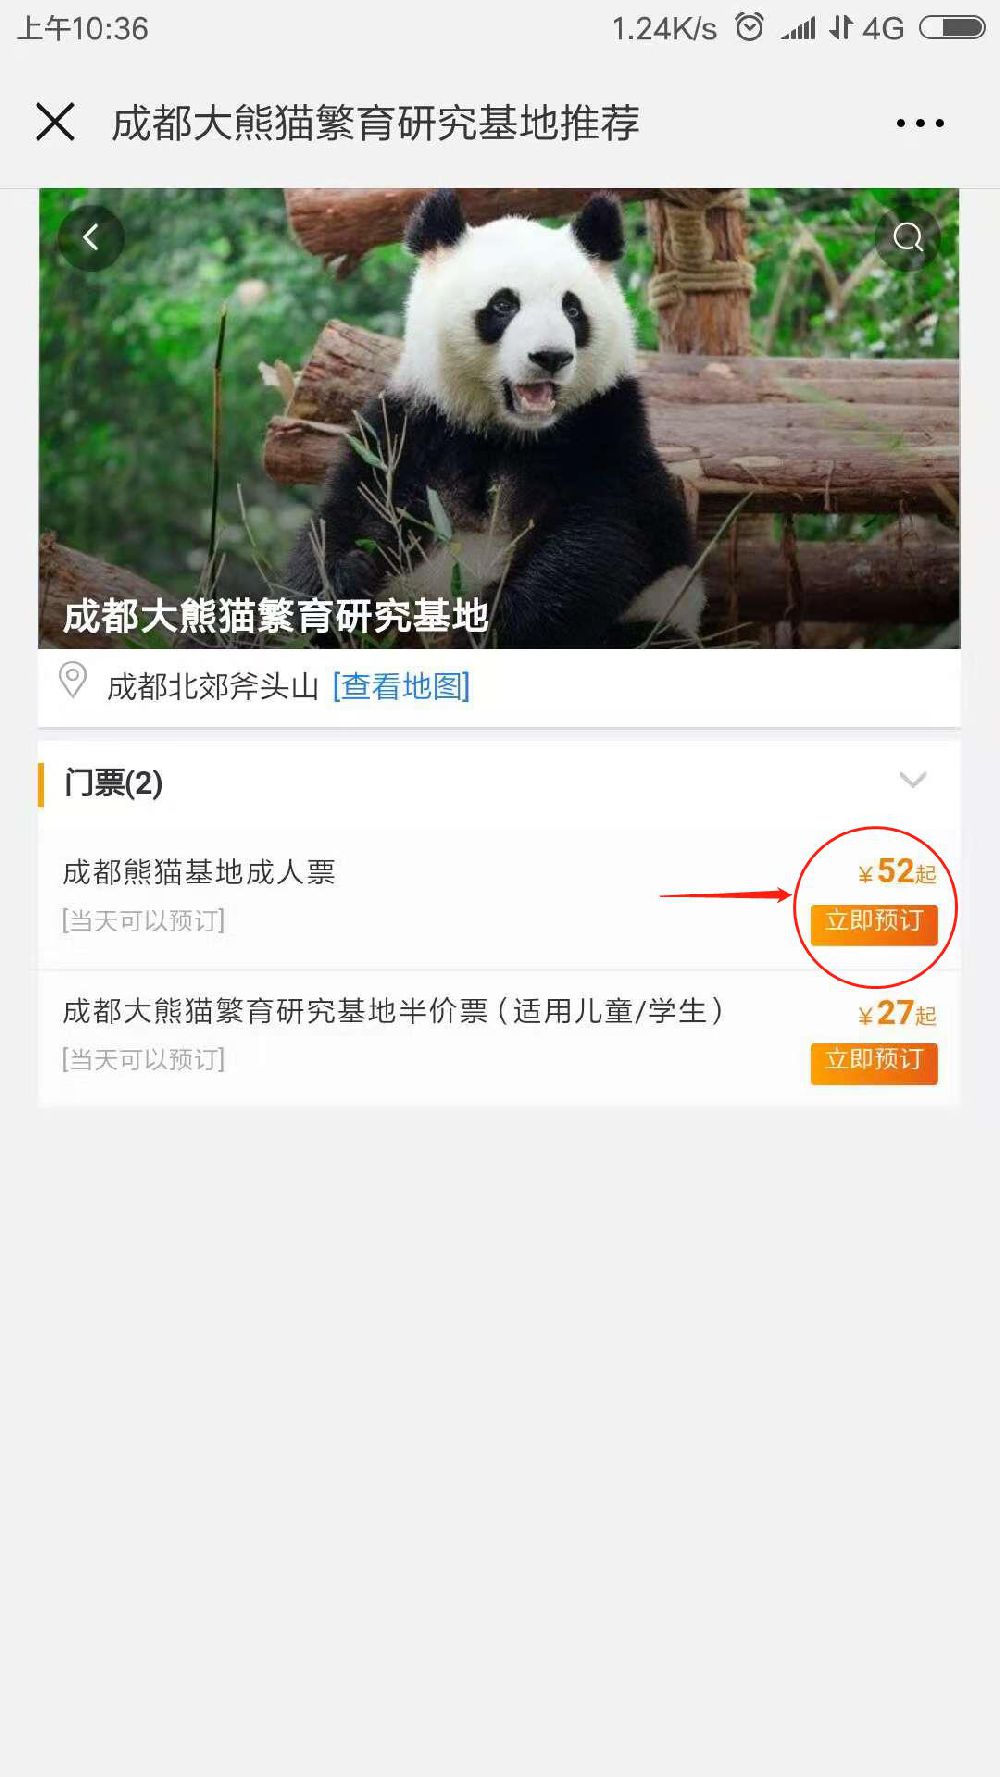 成都大熊猫繁育研究基地门票购买指南（附操作步骤）